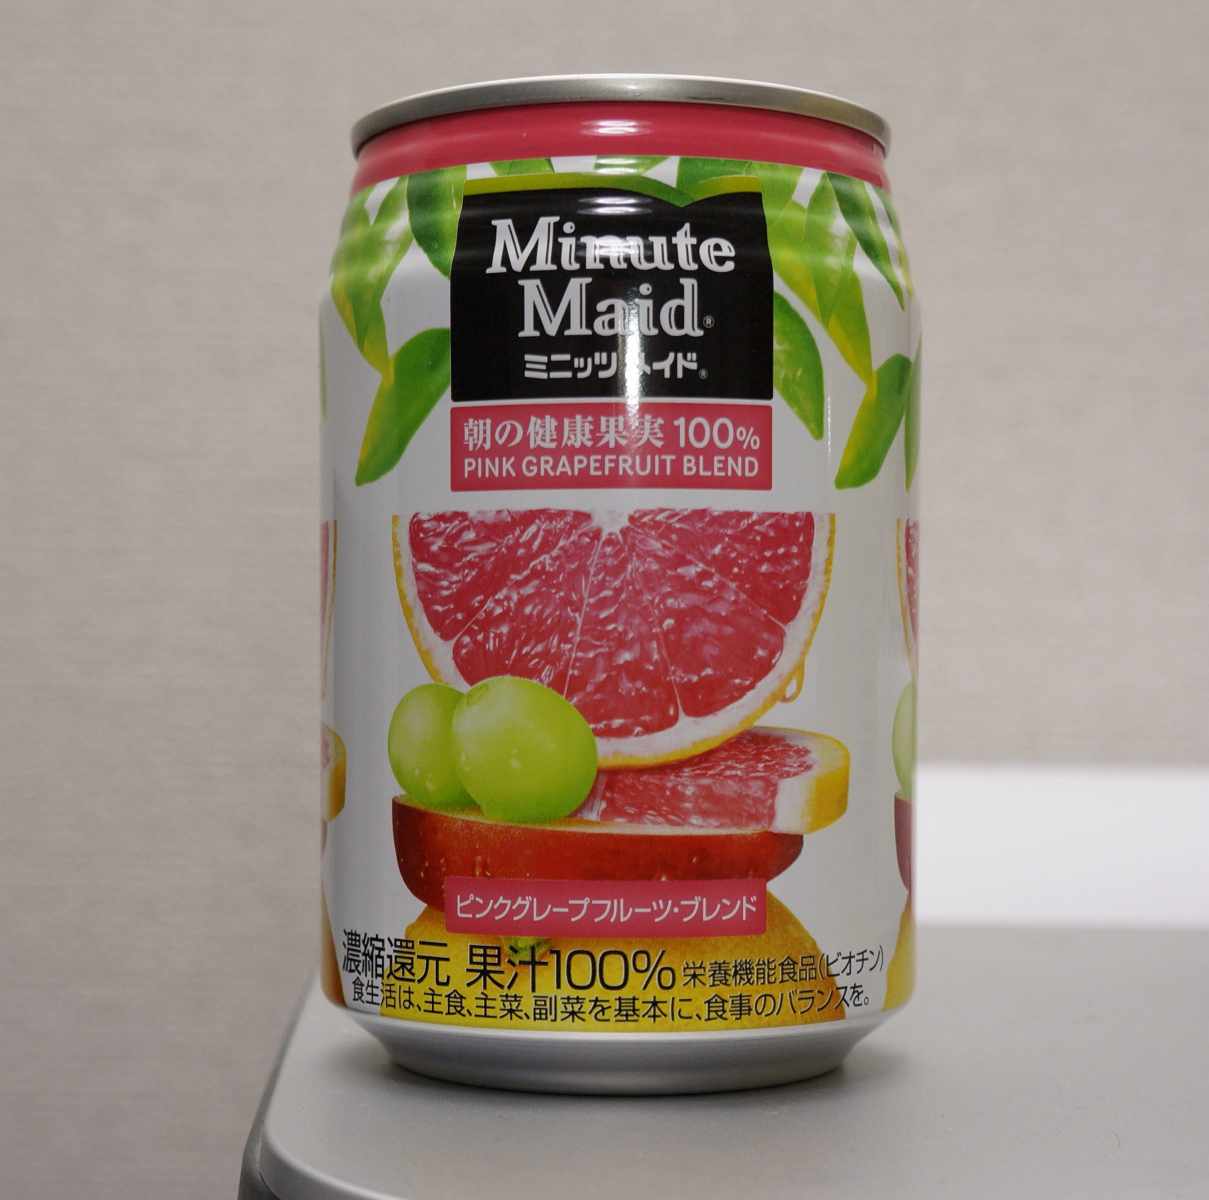 今日の飲み物 ミニッツ メイド朝の健康果実100 ピンクグレープフルーツブレンド メシレポ